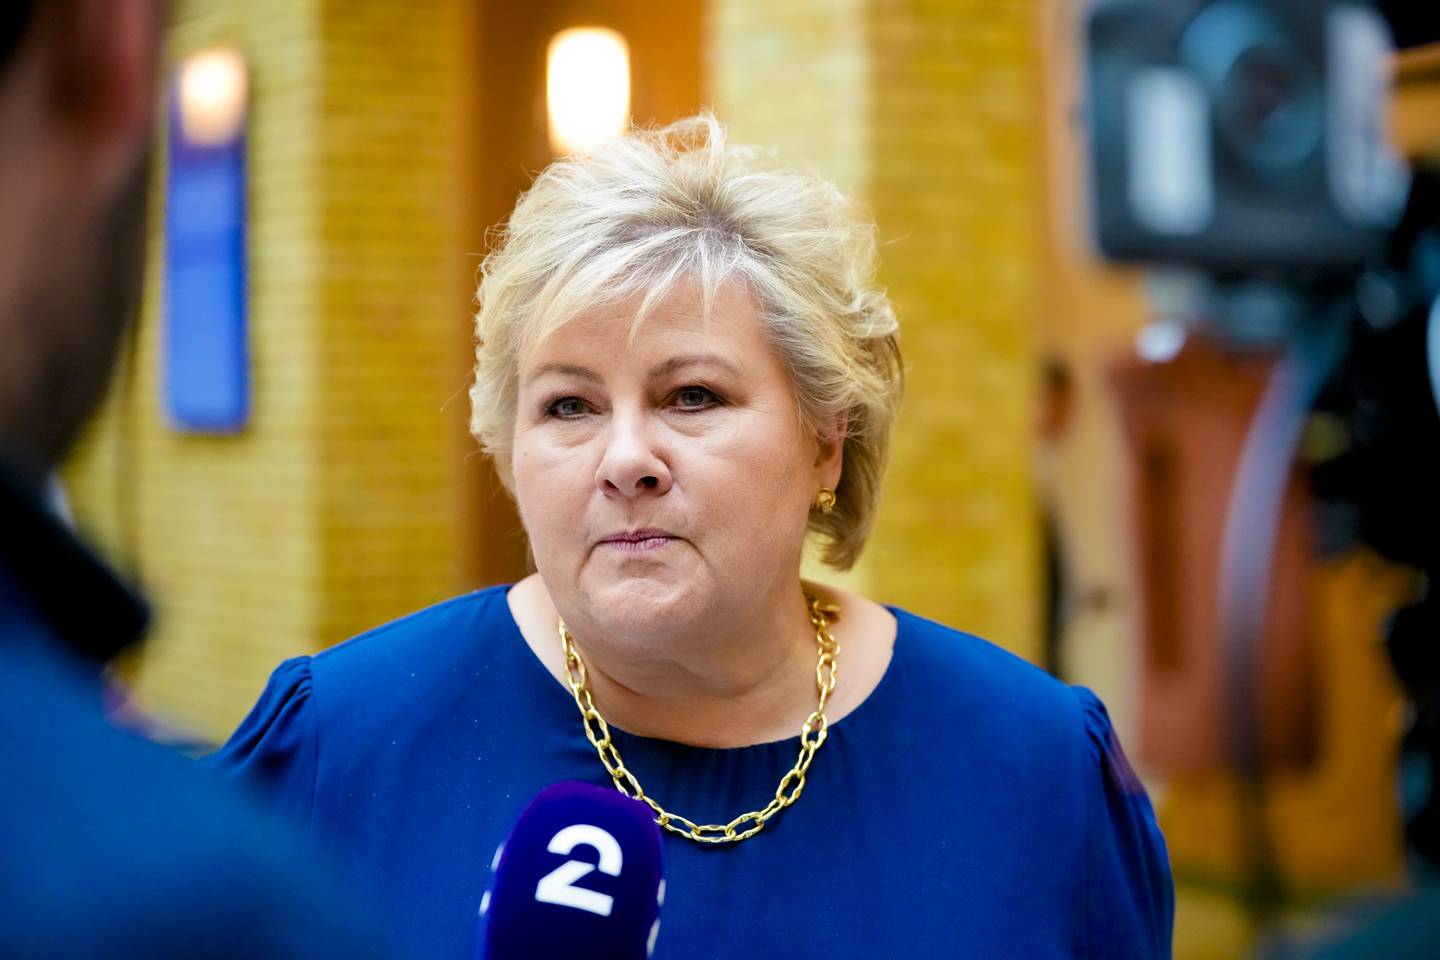 Høyre-leder Erna Solberg savnet flere punkter i regjeringens trontale.
Foto: Beate Oma Dahle / NTB